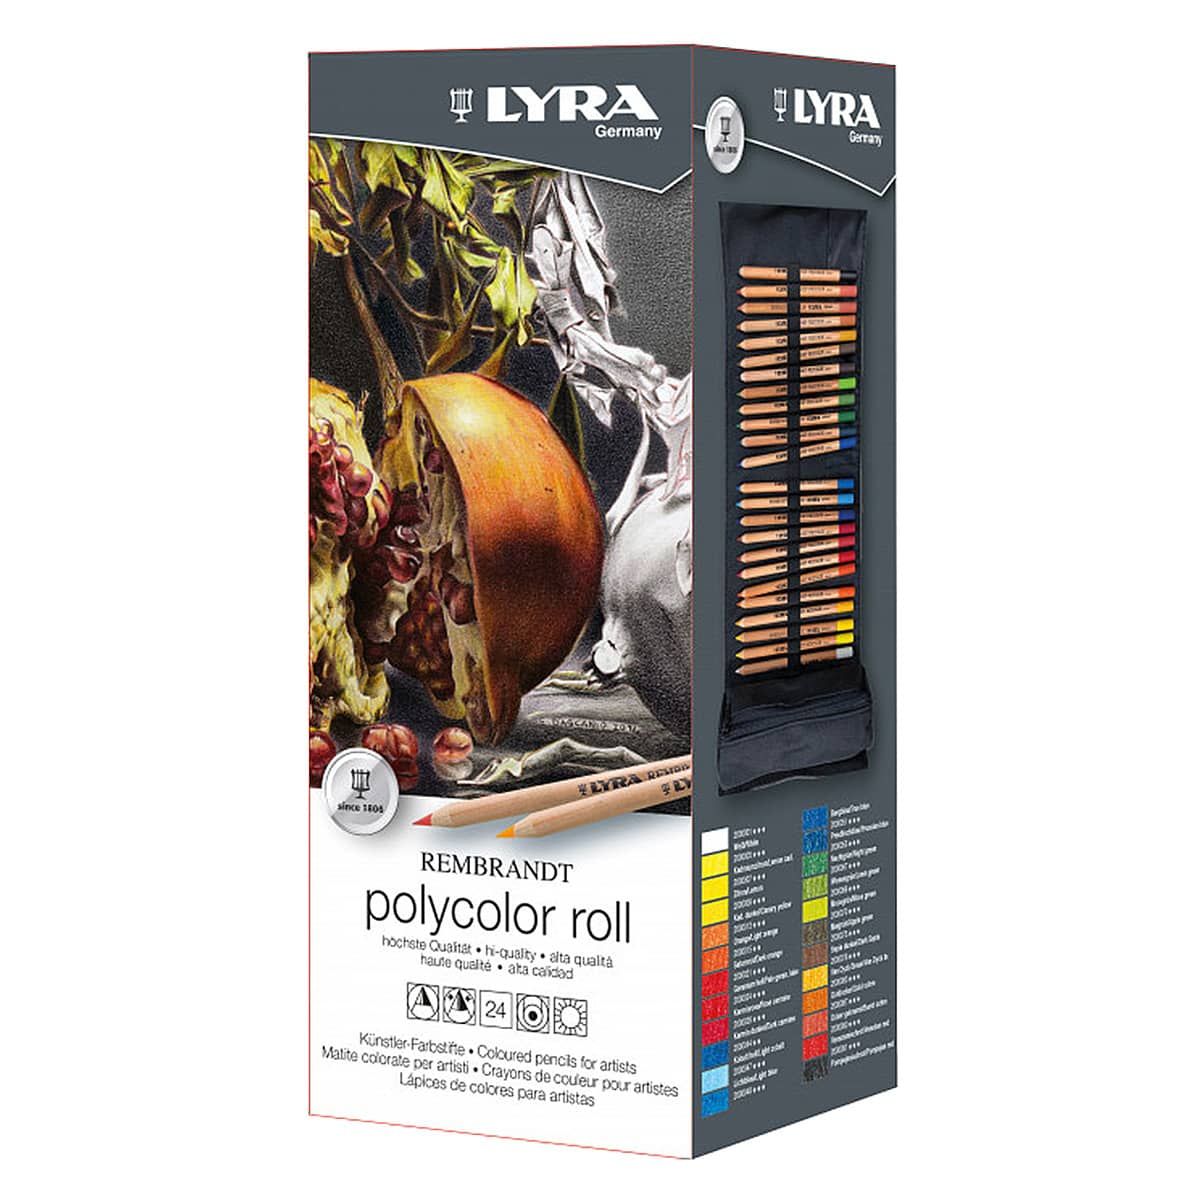 https://www.jerrysartarama.com/media/catalog/product/cache/ecb49a32eeb5603594b082bd5fe65733/c/o/color-roll-set-of-24-lyra-rembrand-polycolor-pencil-sets-2-ls-v38883.jpg